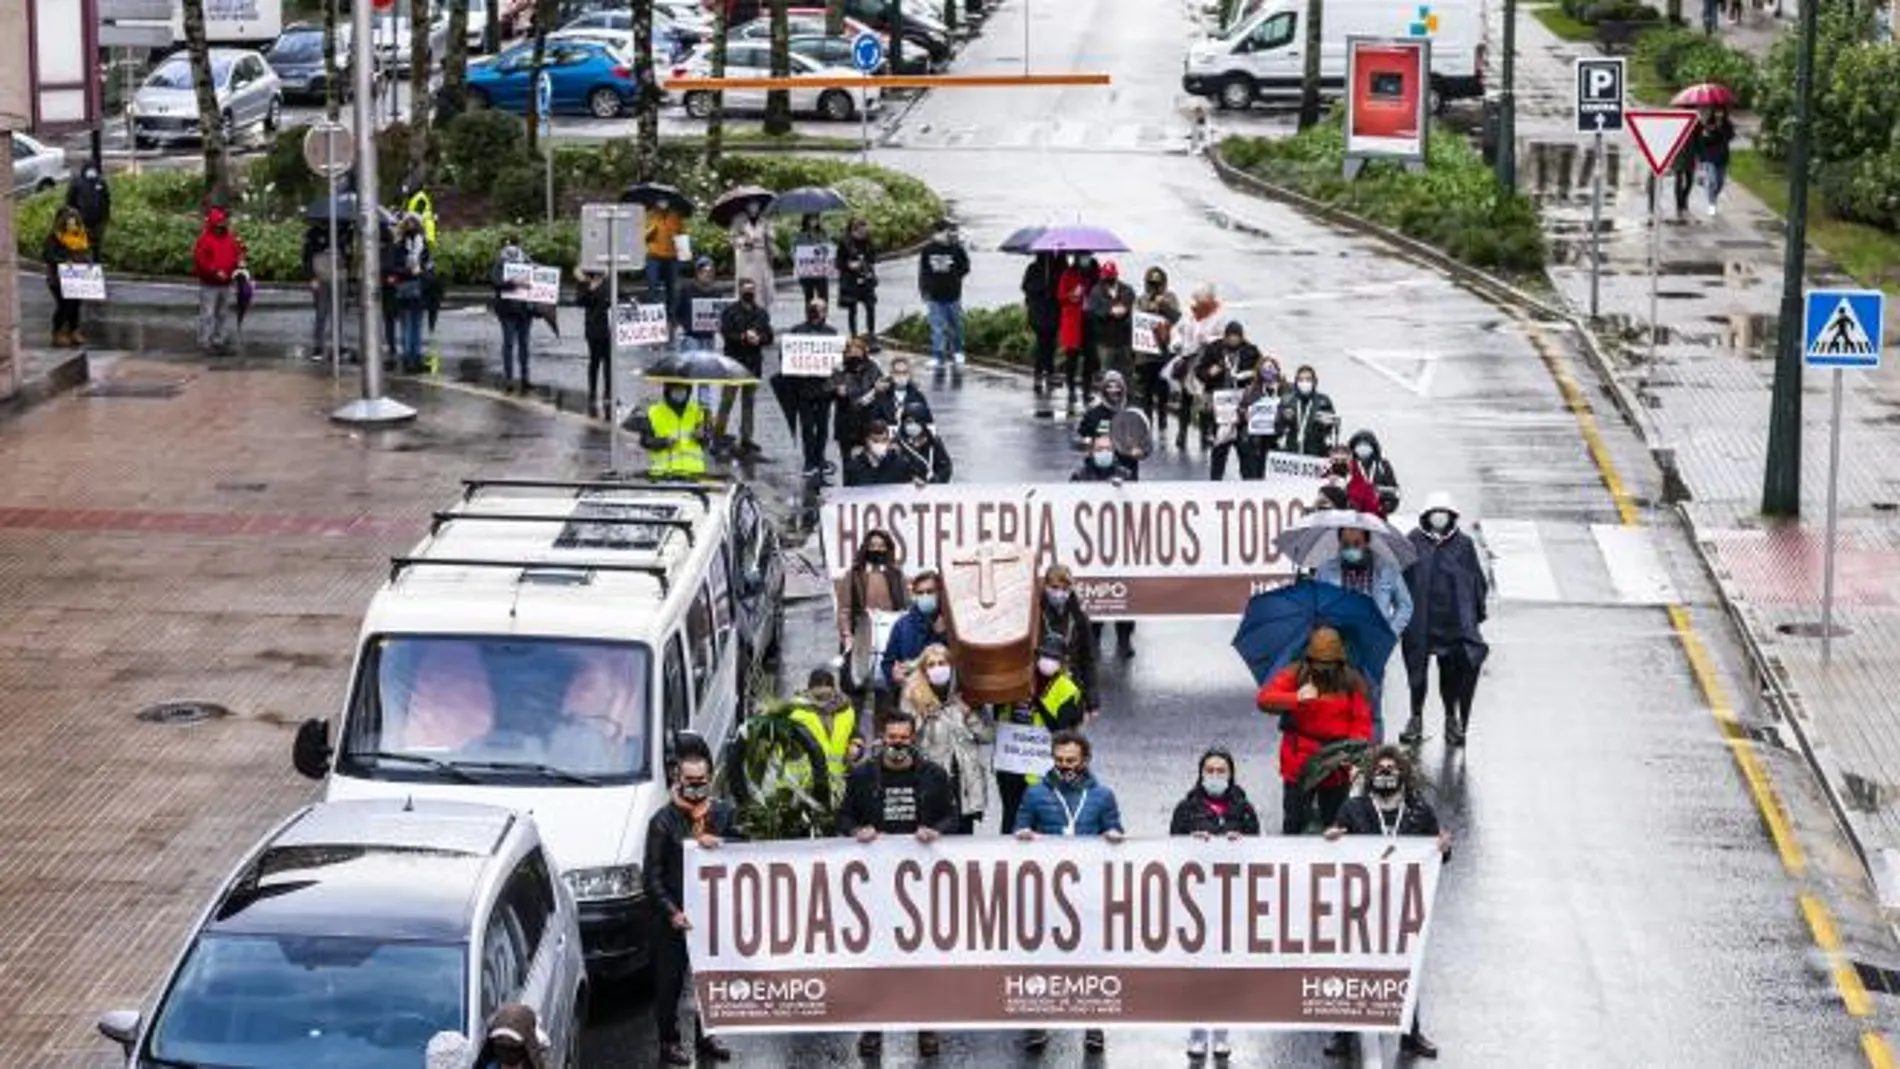 Hosteleros de Pontevedra arrancan una caminata de 14 días hasta Madrid para pedir al Congreso un "rescate"